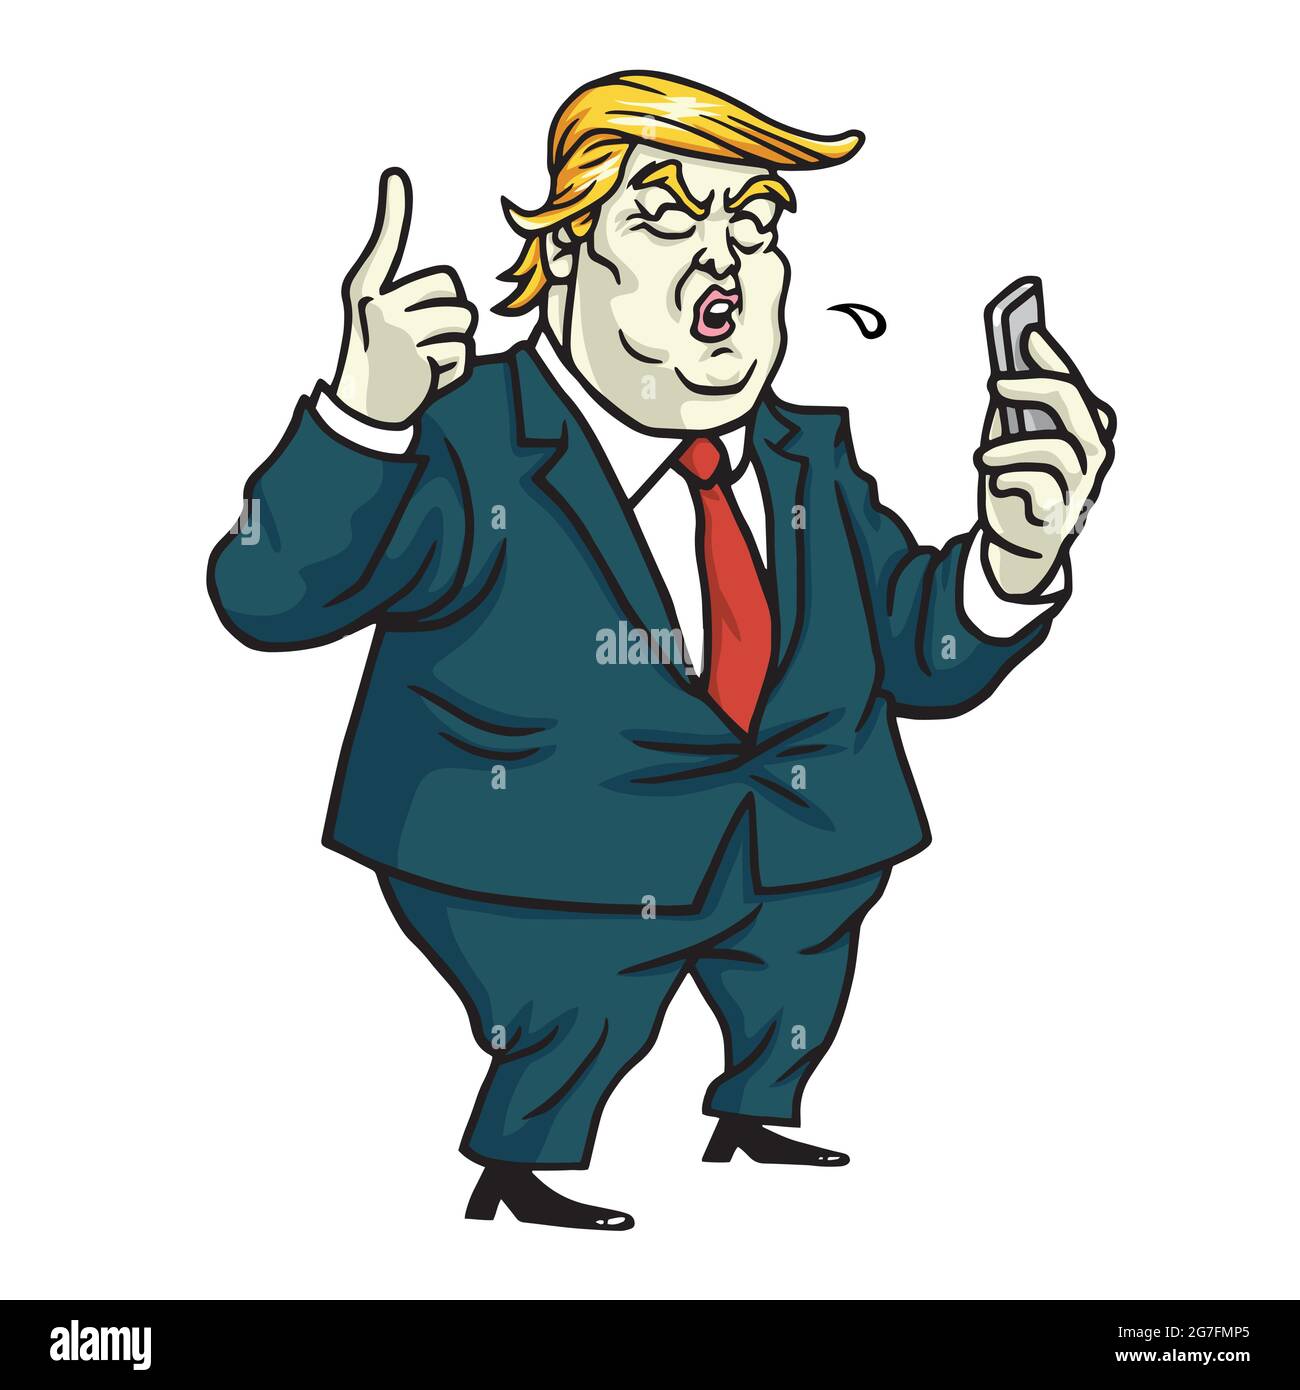 Donald Trump Kommentare zu Social Media. Cartoon-Vektor Stock Vektor